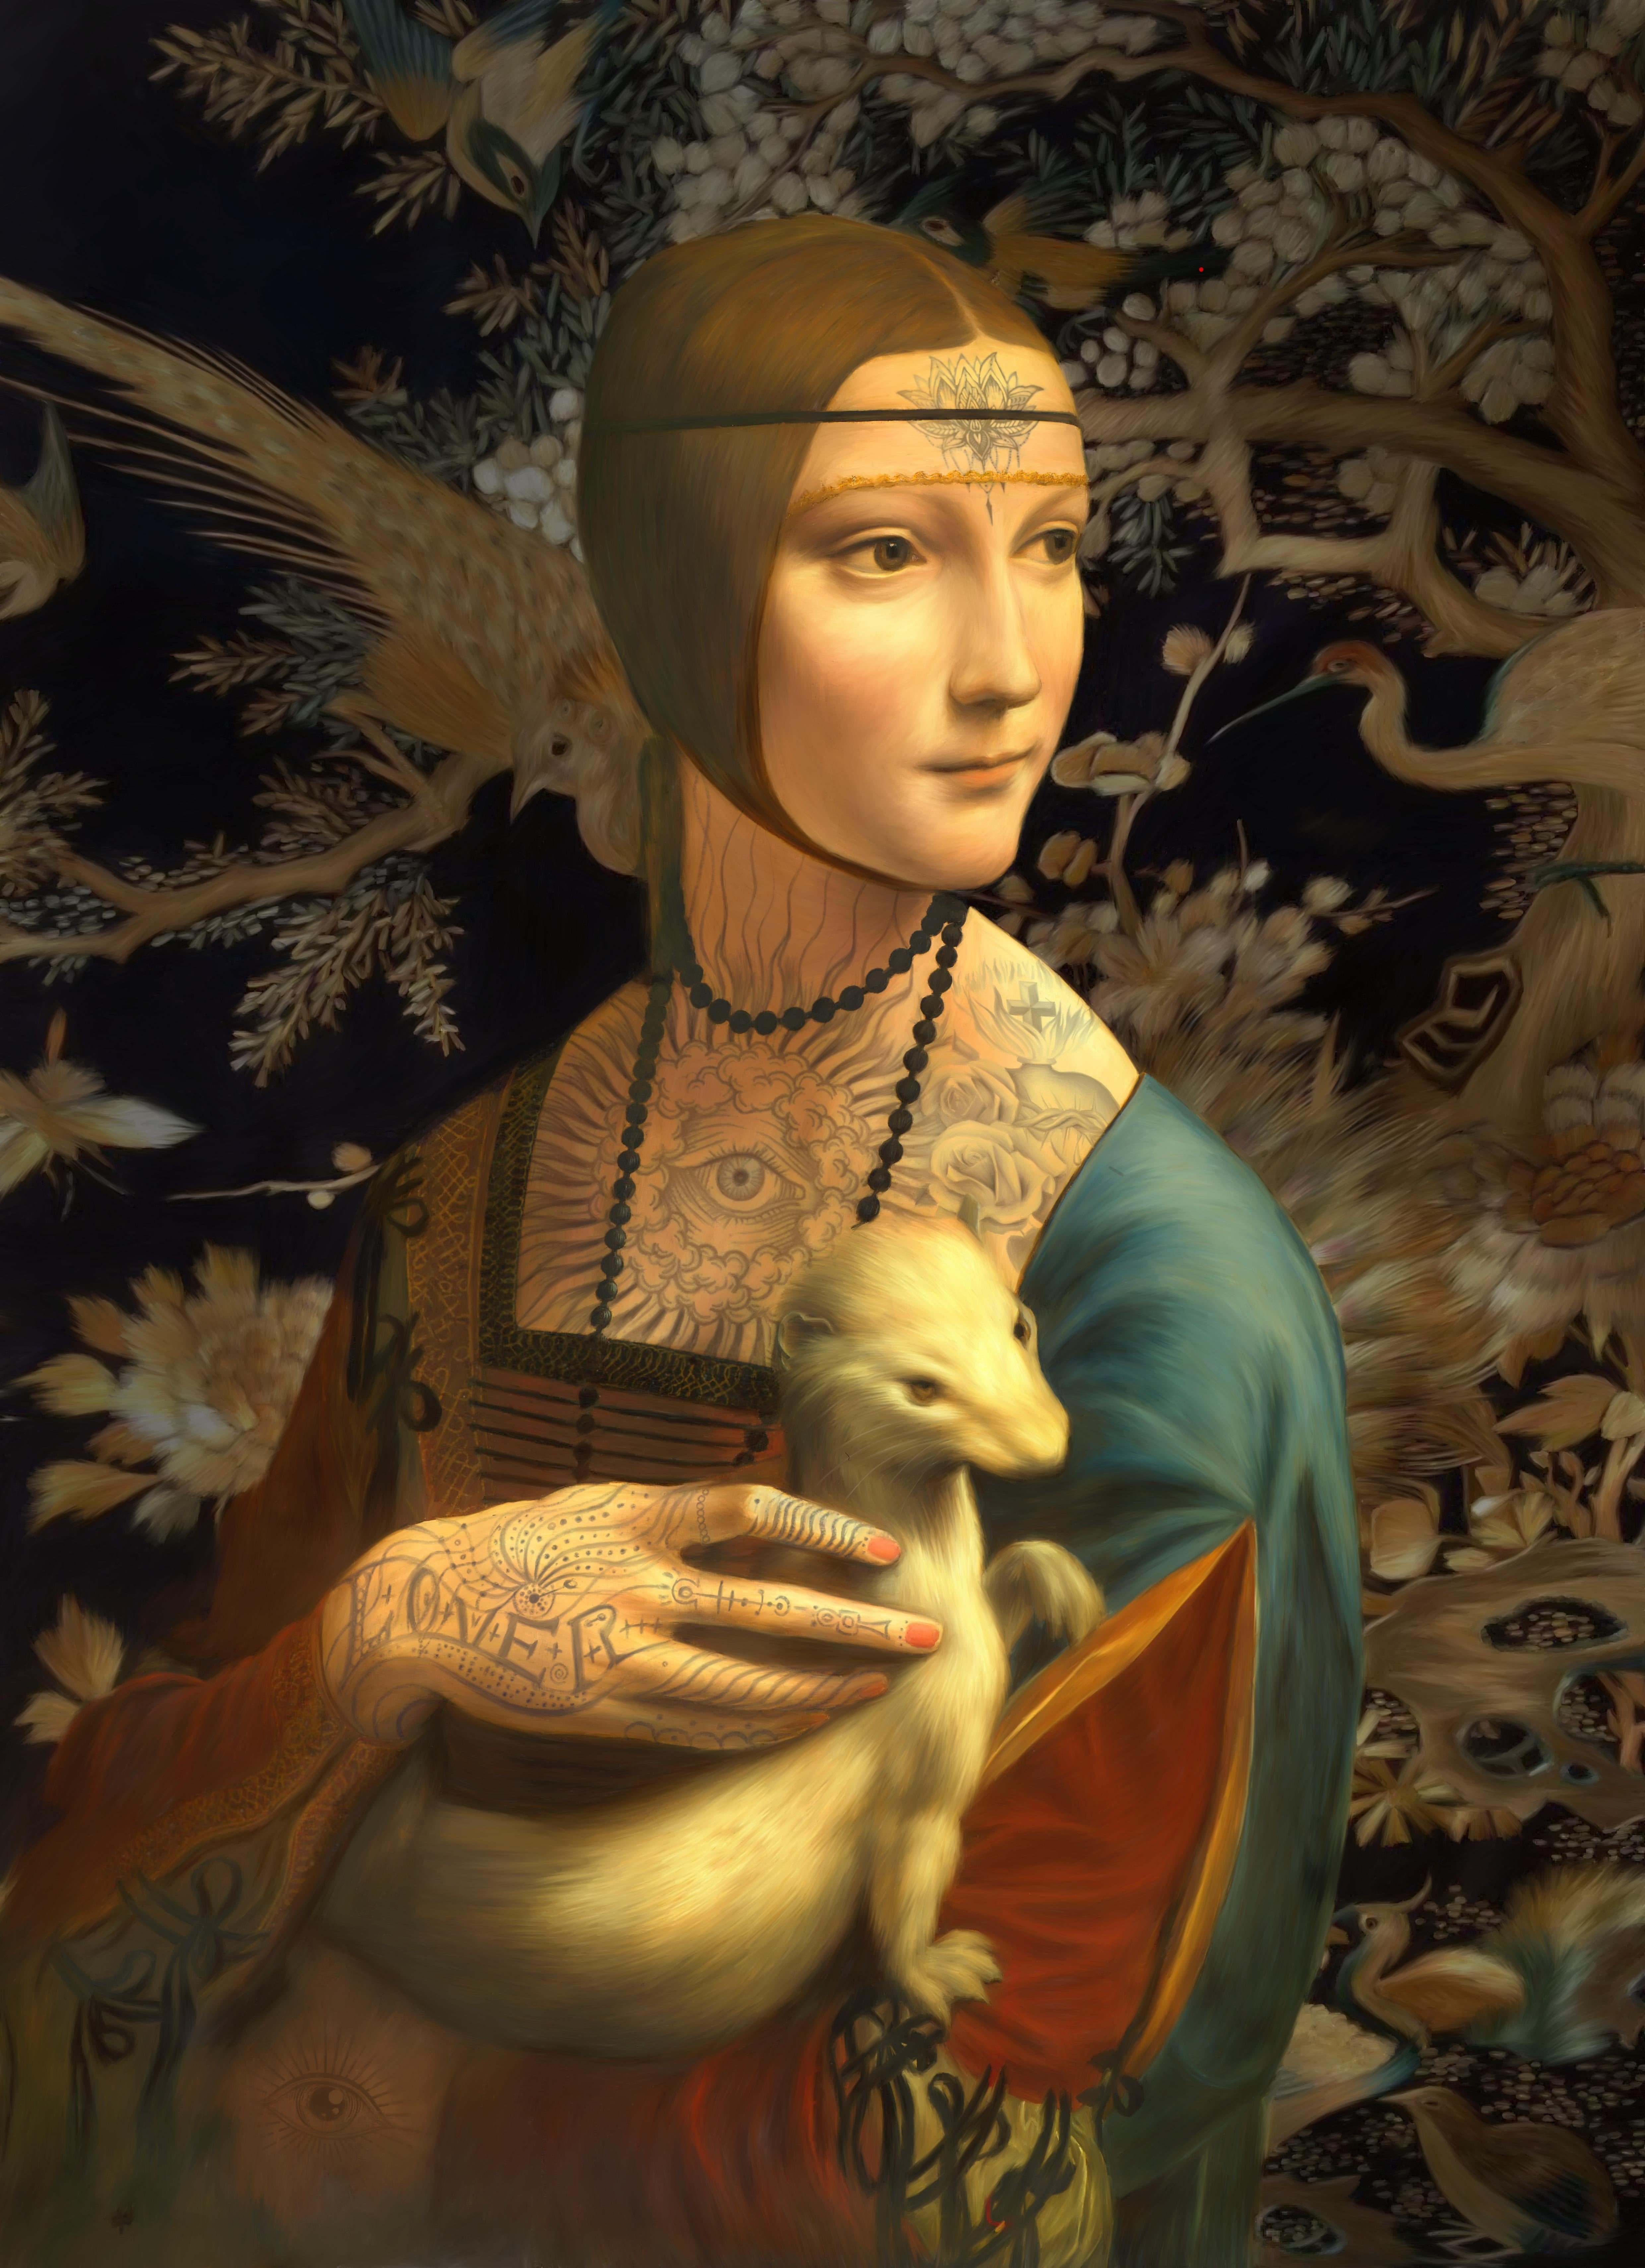 La dame de l'encre The A s'inspire du portrait de la Dame à l'hermine, de Leonardo da Vinci.